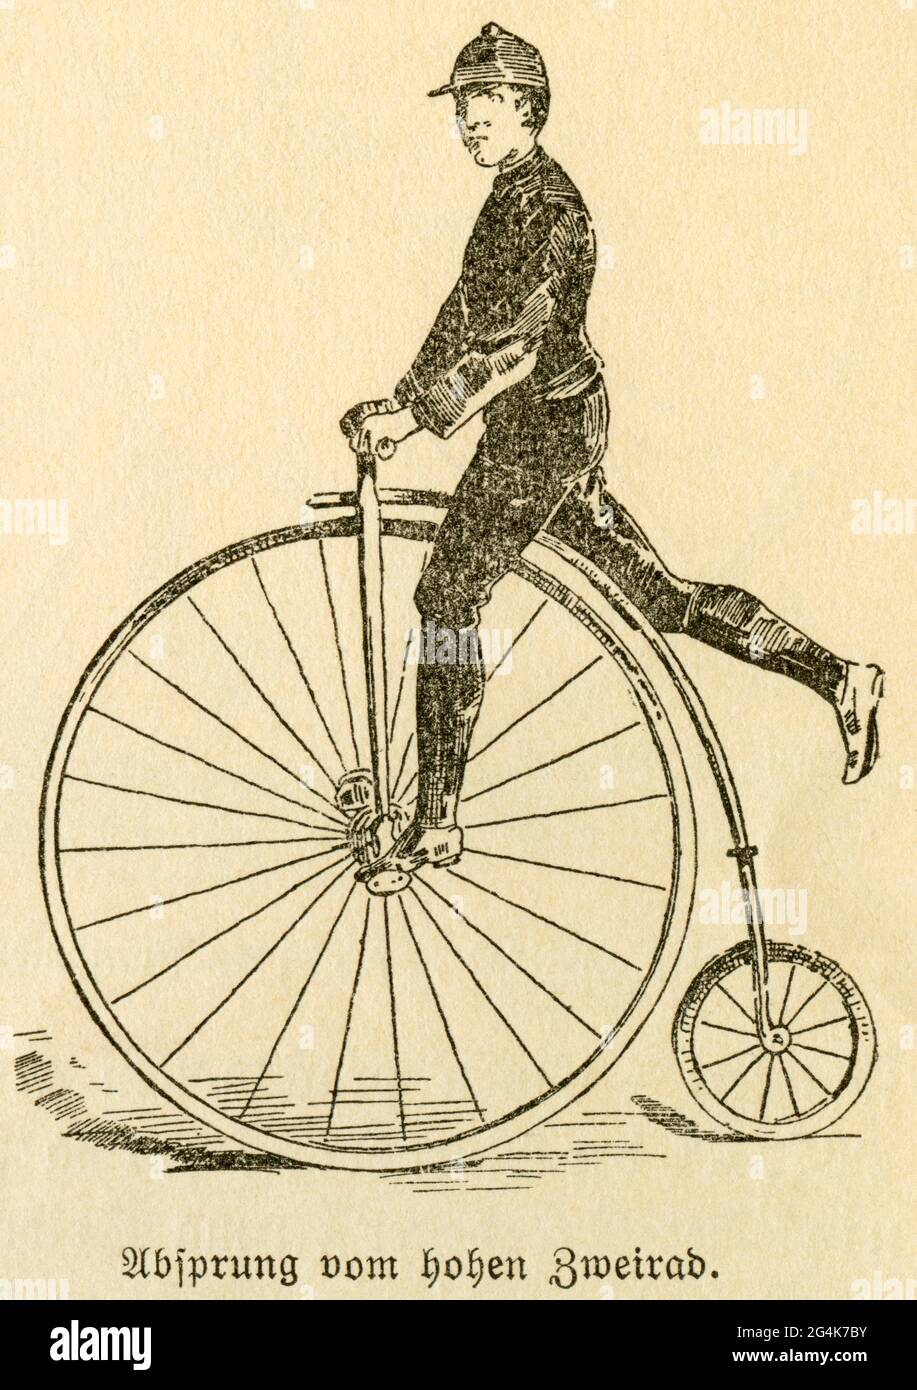 Allemagne, histoire des bicyclettes, texte original: 'Absprung vom Hochrad' (descendre de l'ordinaire), DROITS-SUPPLÉMENTAIRES-AUTORISATION-INFO-NON-DISPONIBLE Banque D'Images